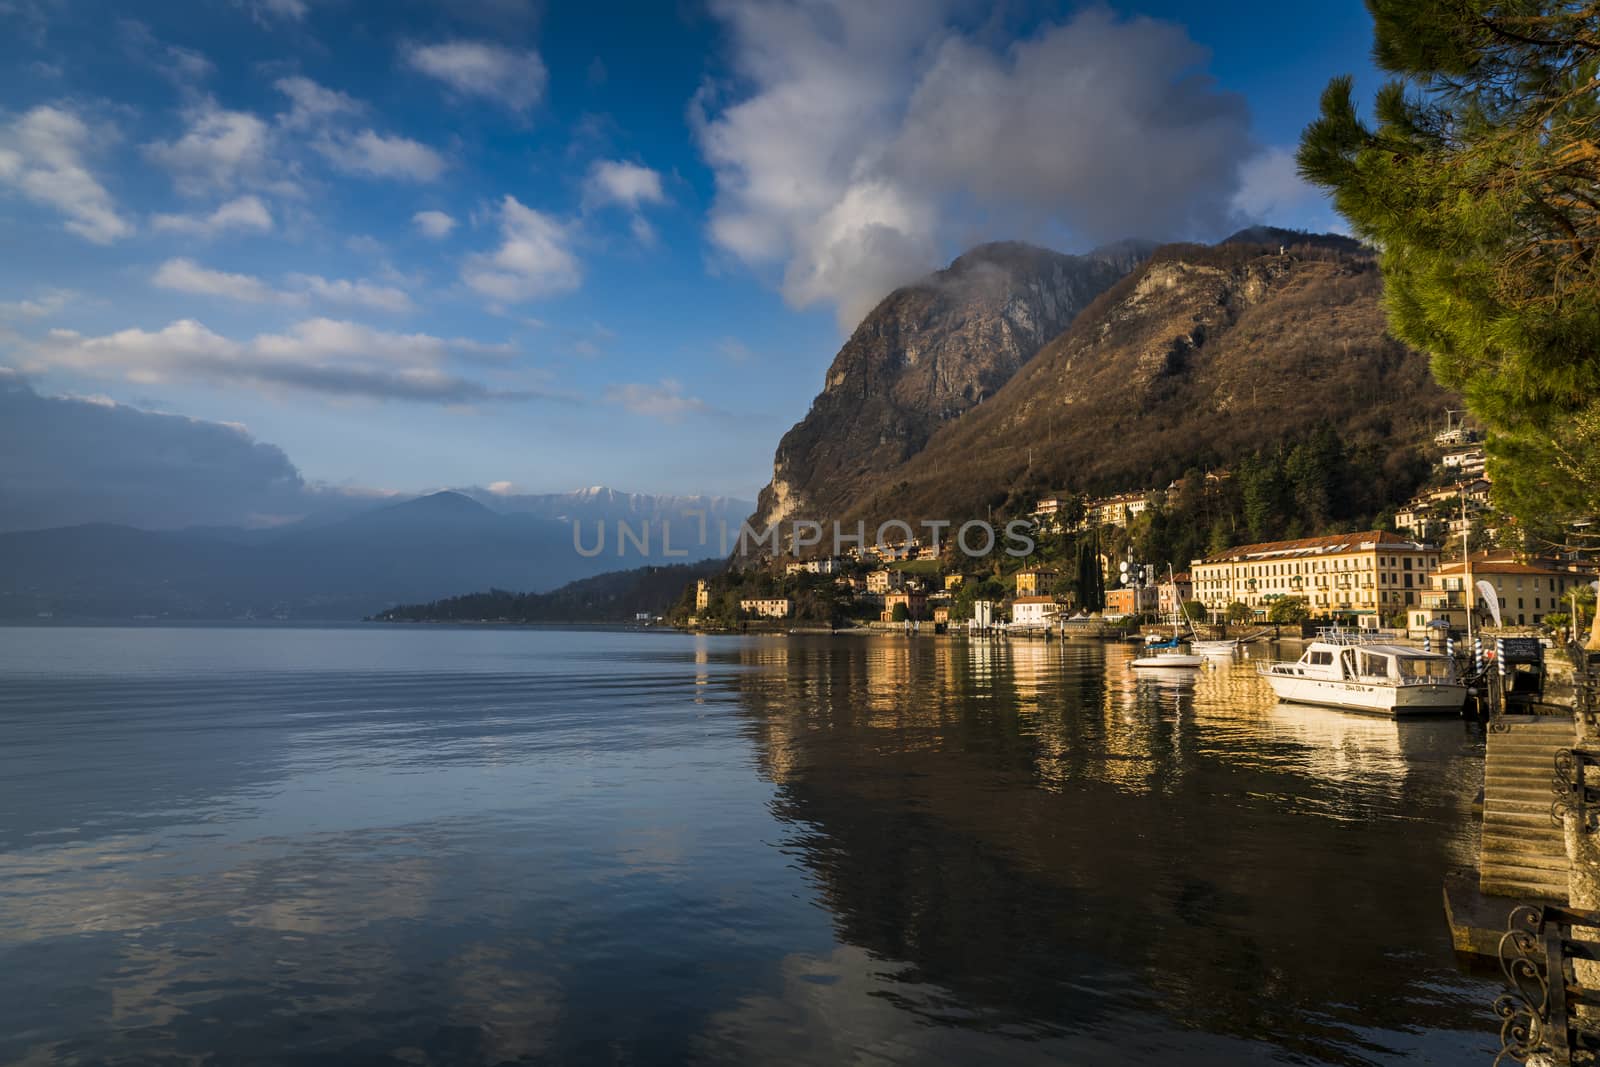 Beautiful morning at Mennagio, Italy, Lake Como by hongee